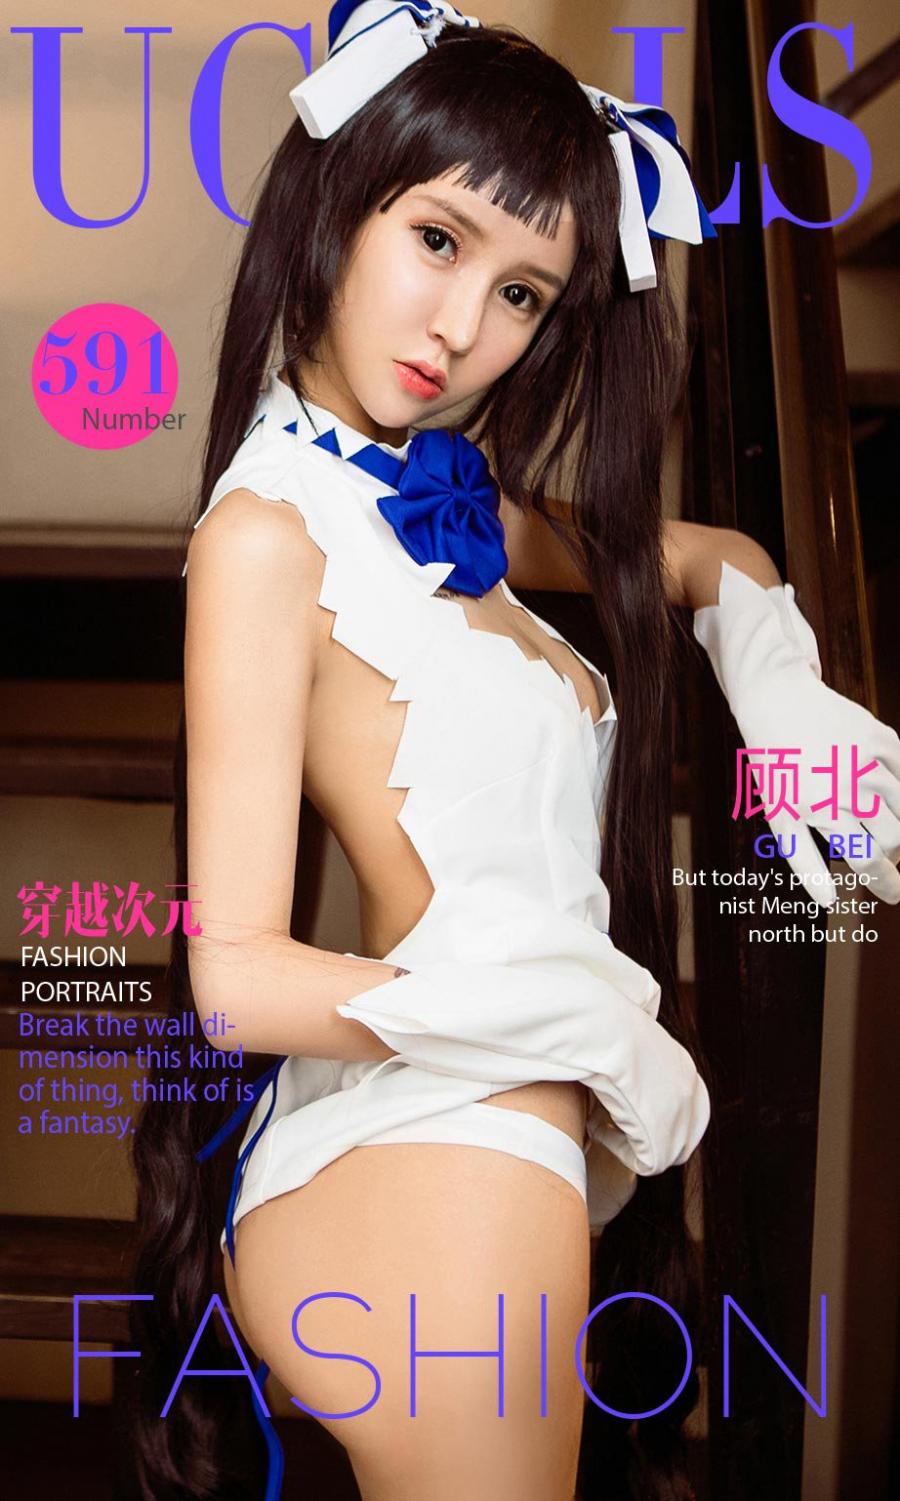 Ugirls App Vol. 591 Gu Yi Zhi